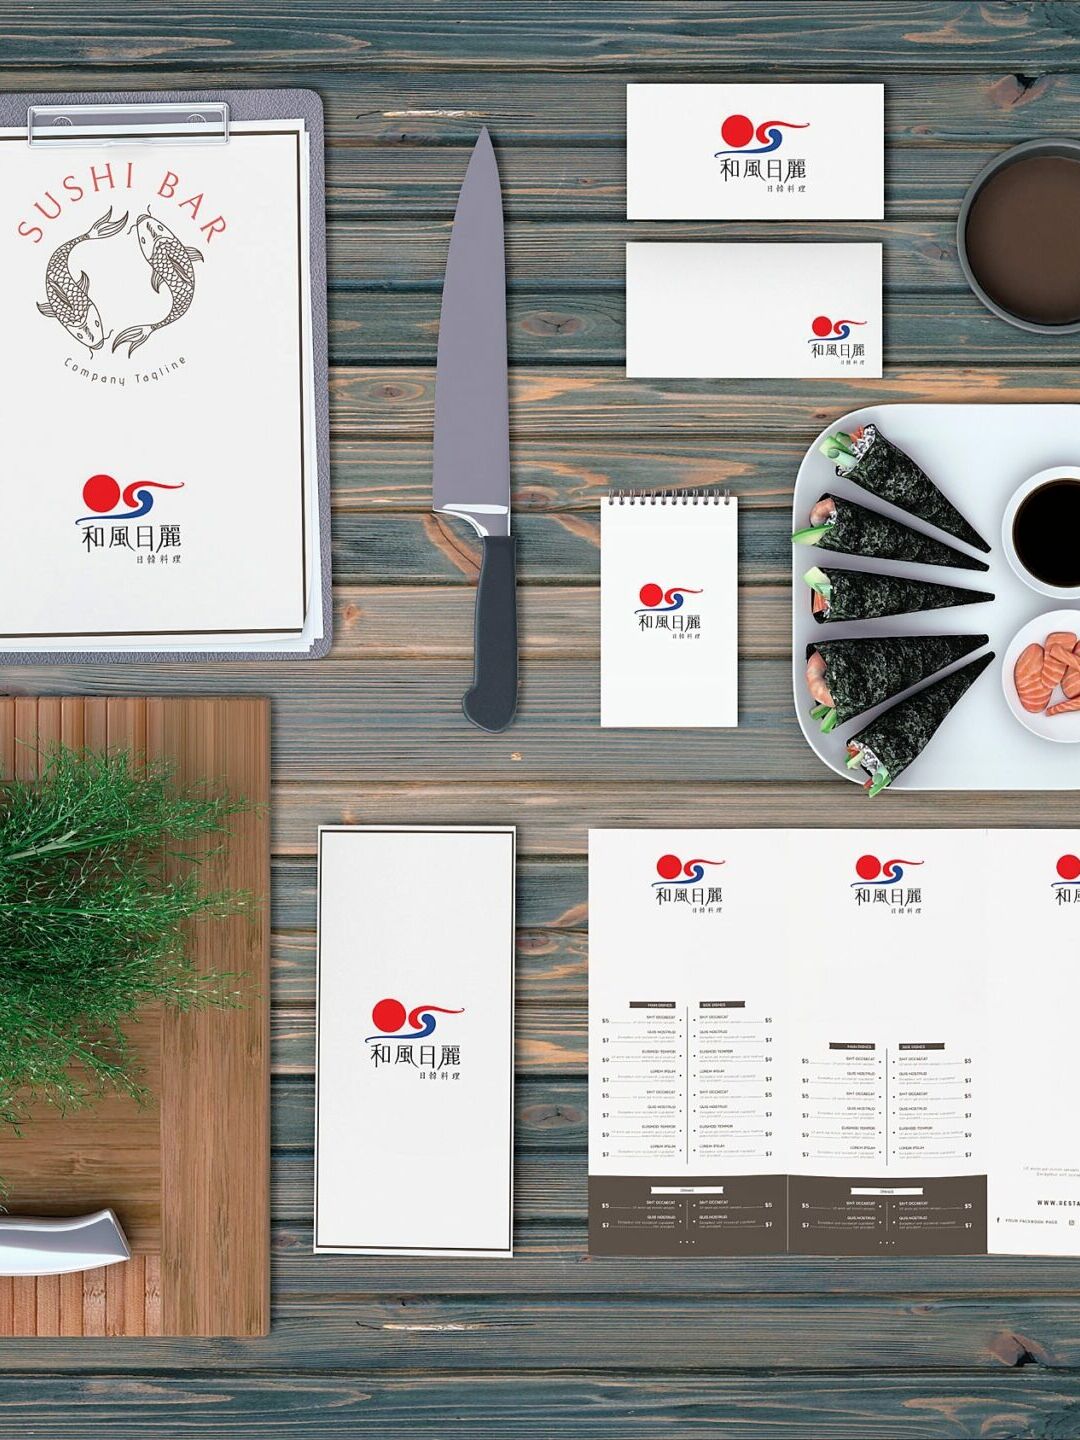 Sunnyshine Creative Sushi Bar Menu Mockup Perfectlyclear